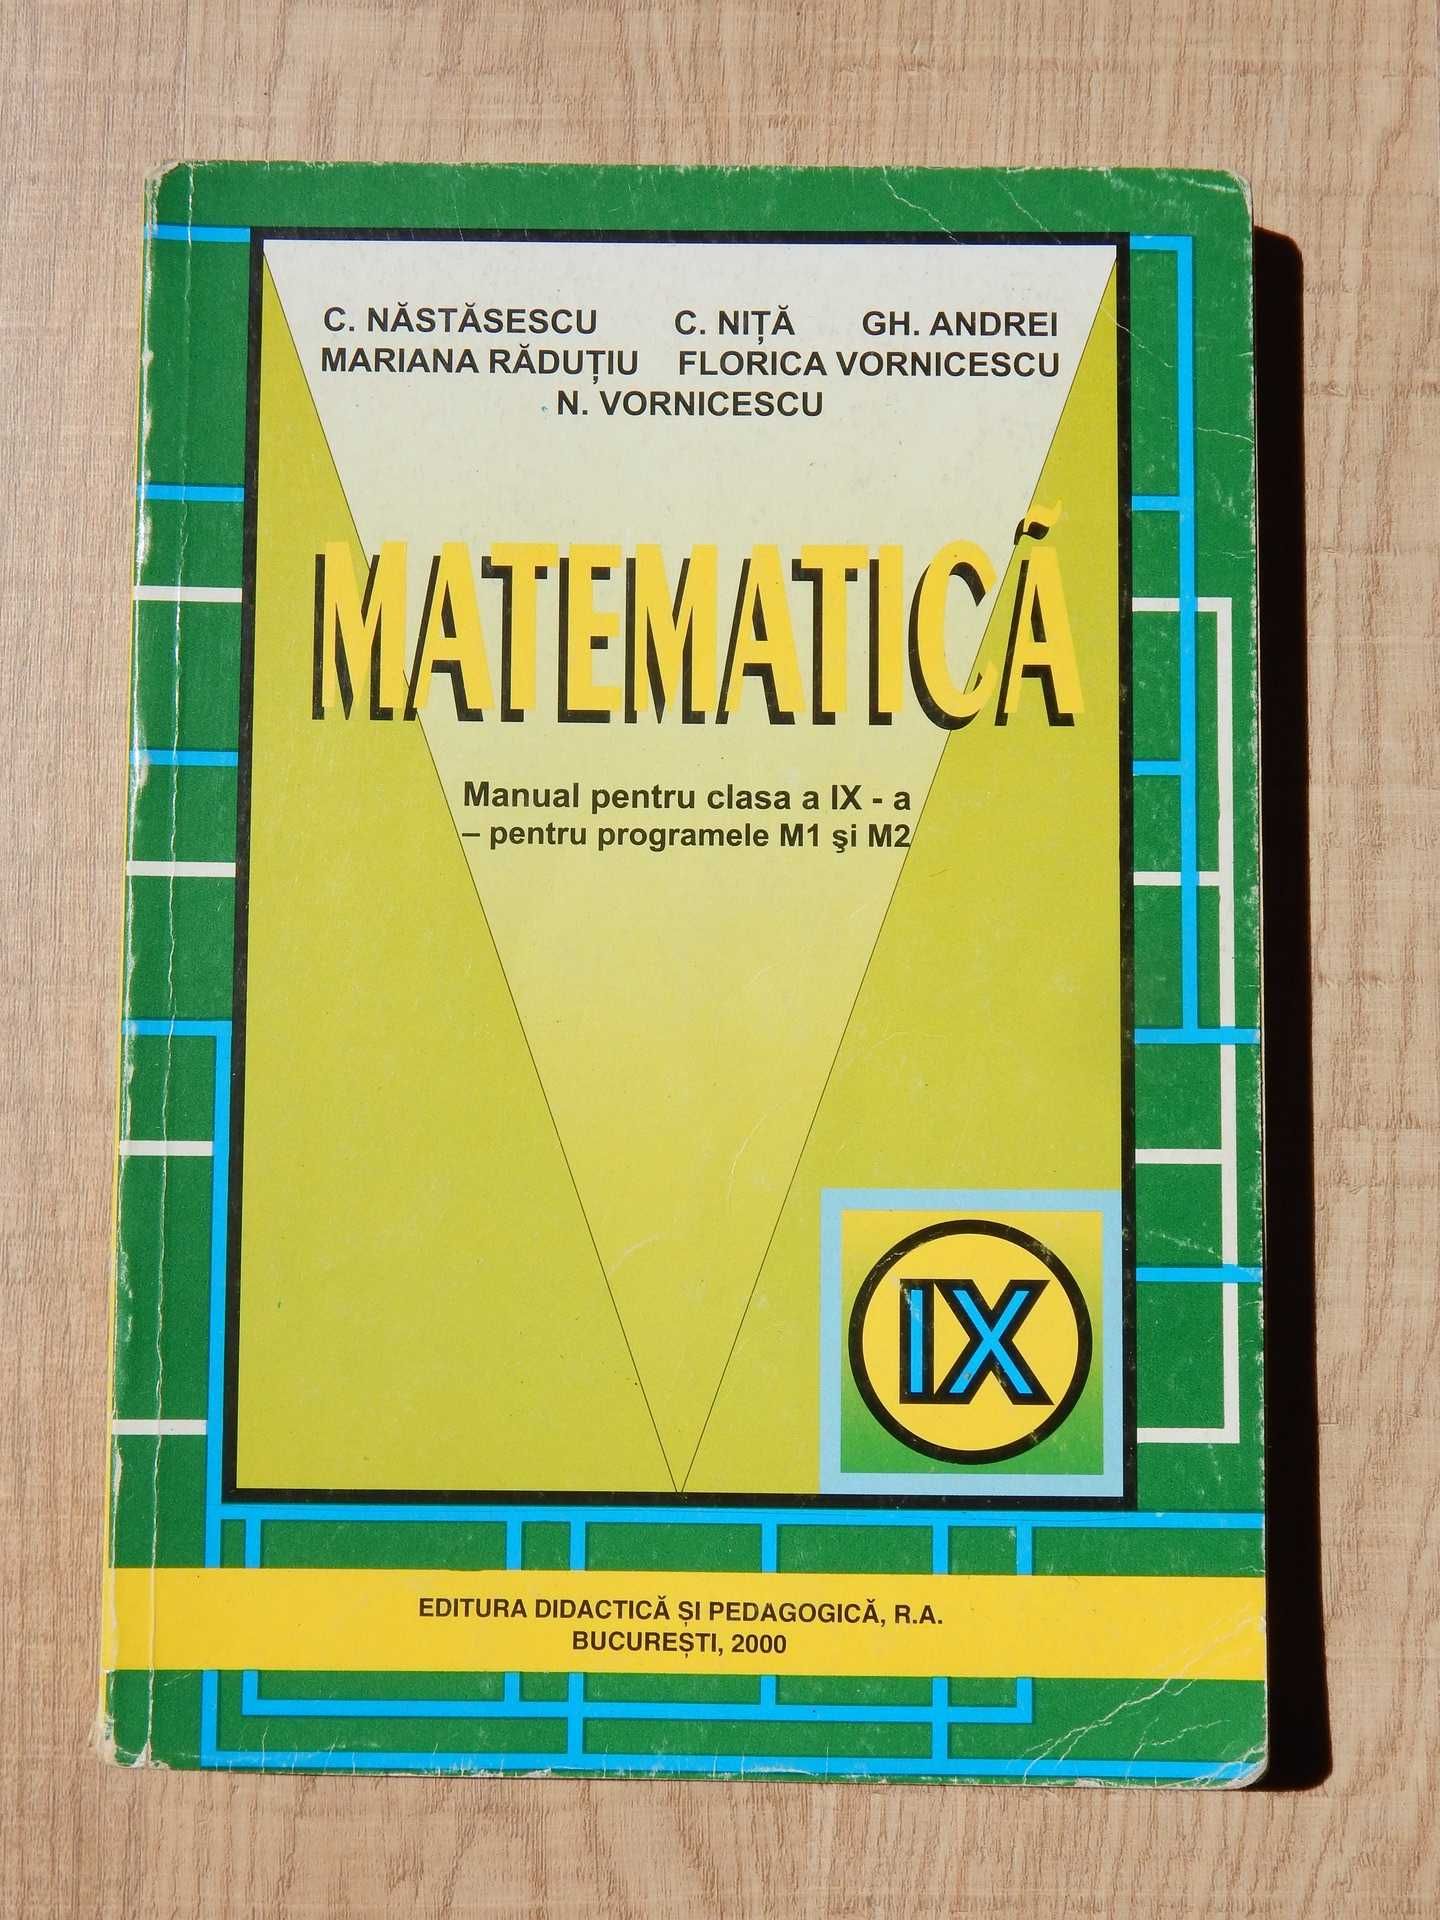 Manual matematica algebra clasa IX Nastasescu Nita Andrei Radutiu 2000